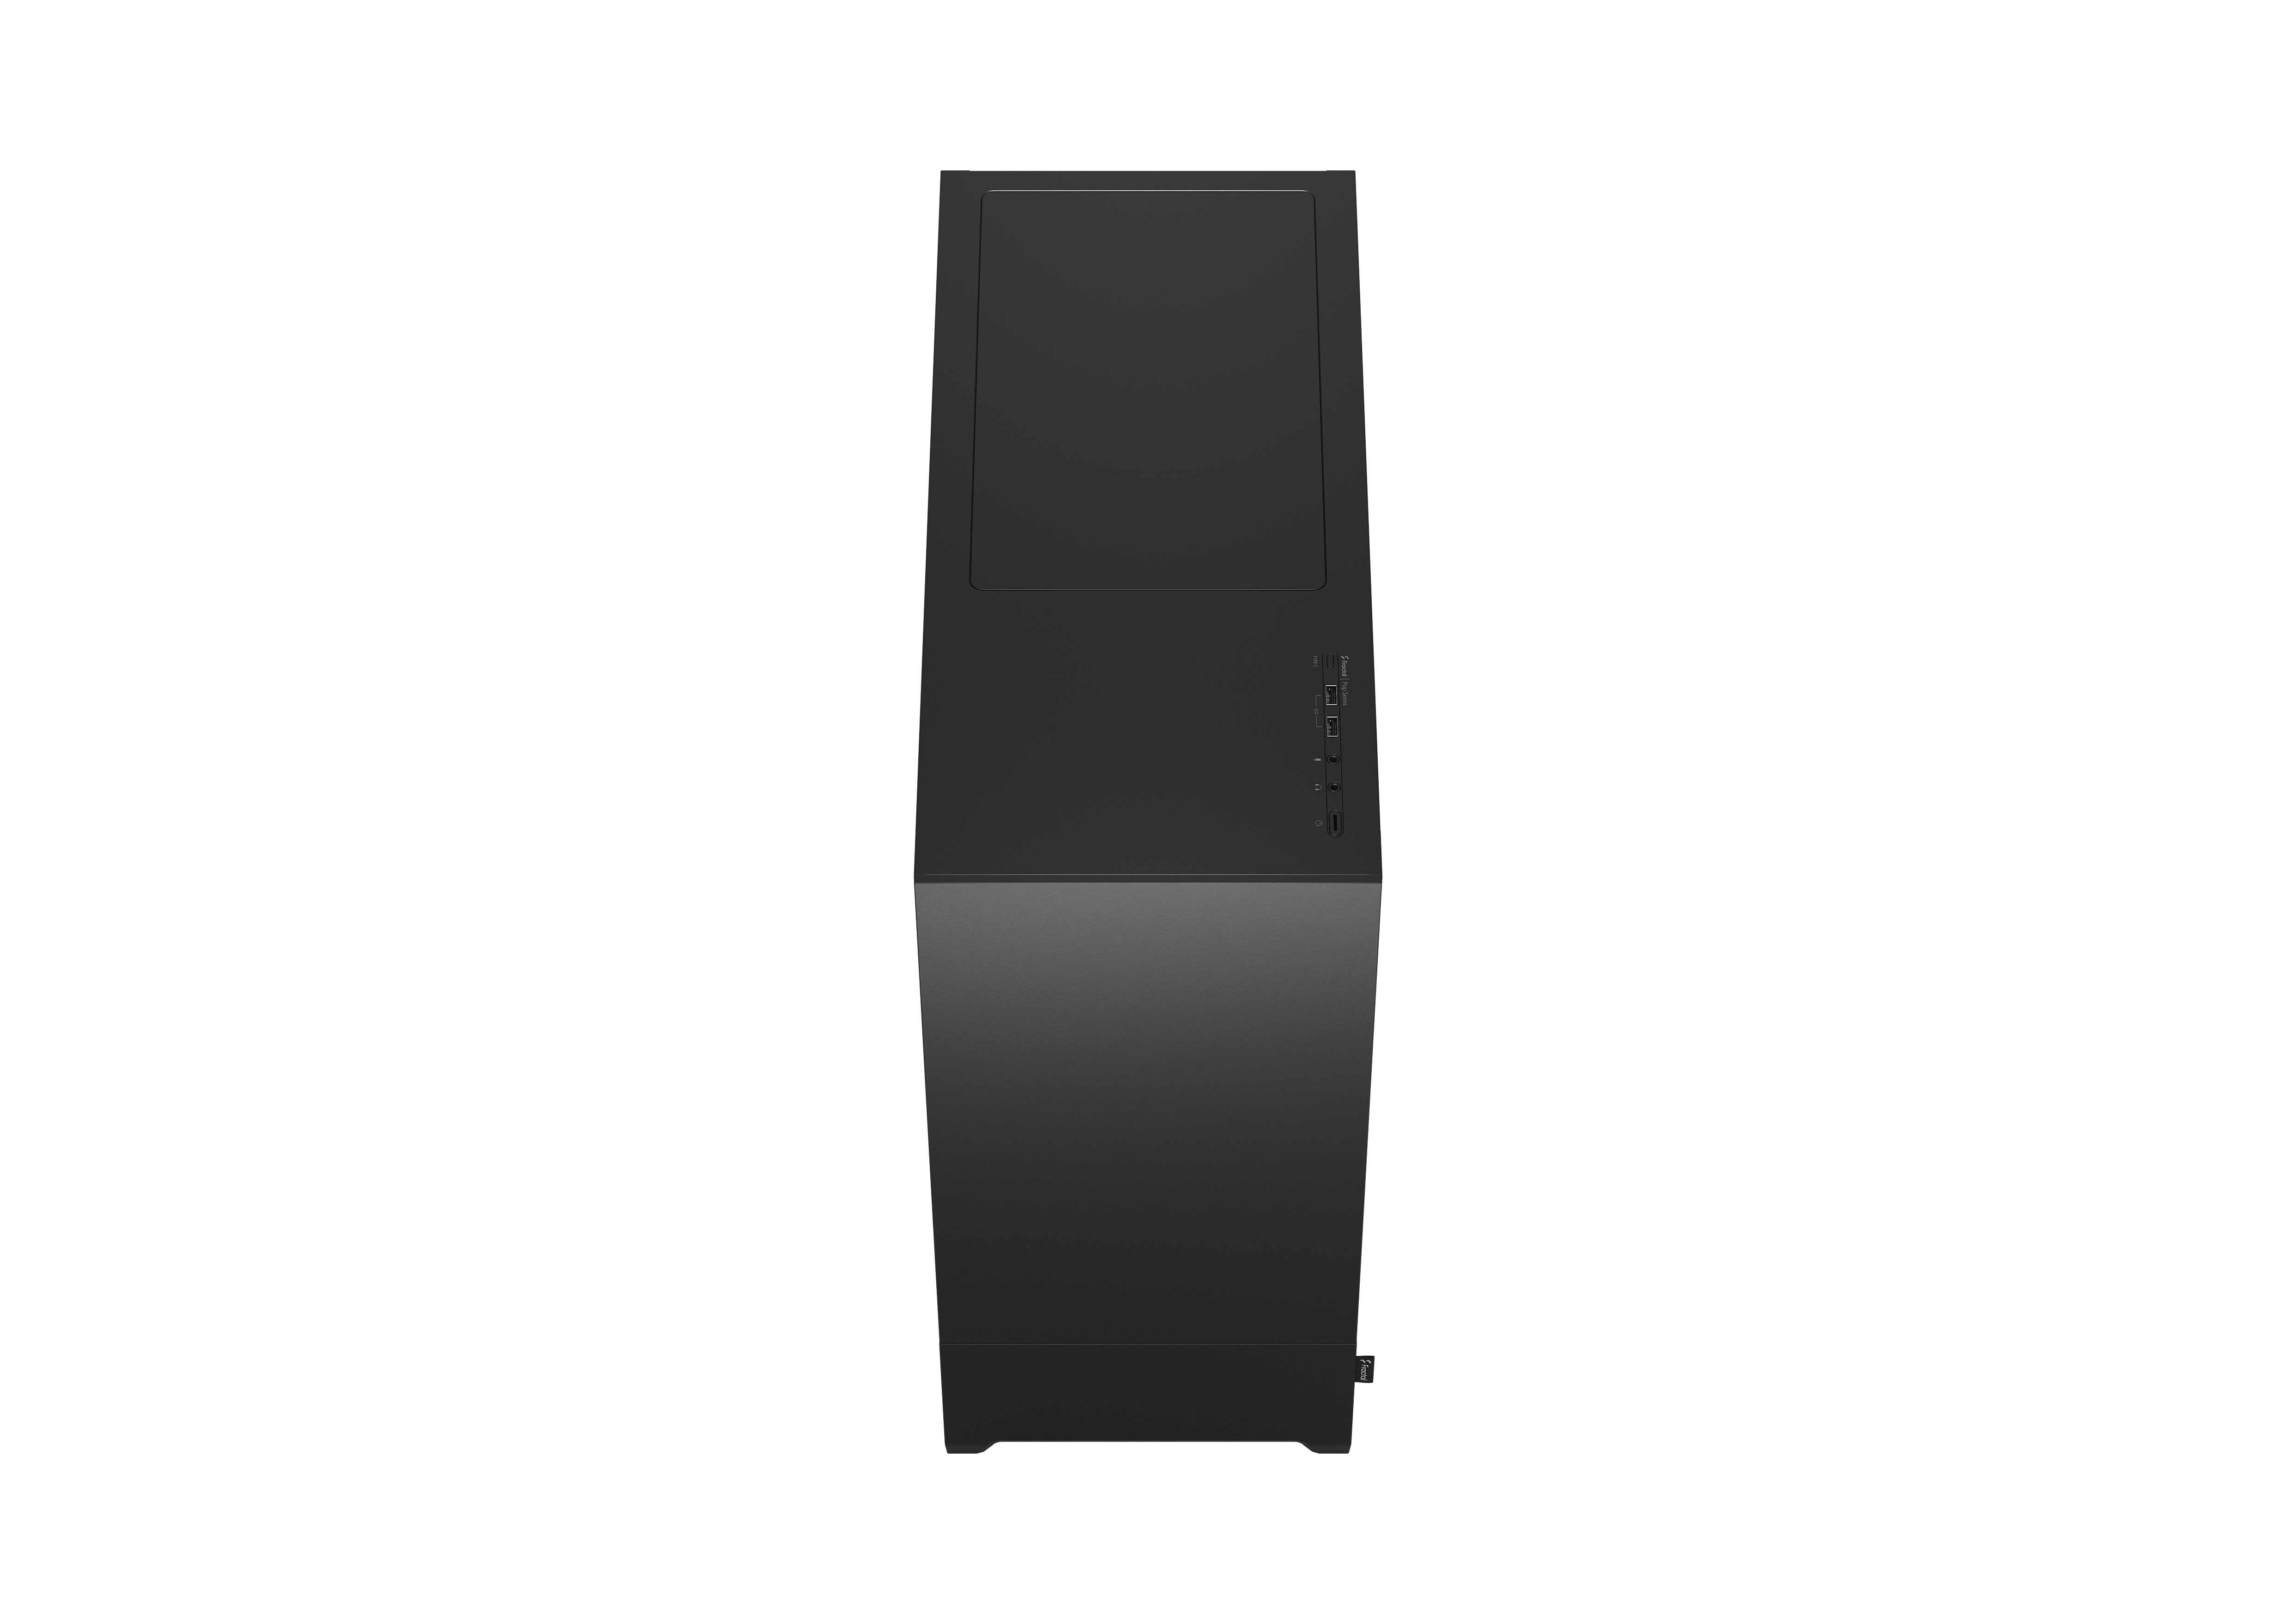 Fractal Design - Fractal Design Pop XL Silent Tempered Glass Full Tower Case - Black